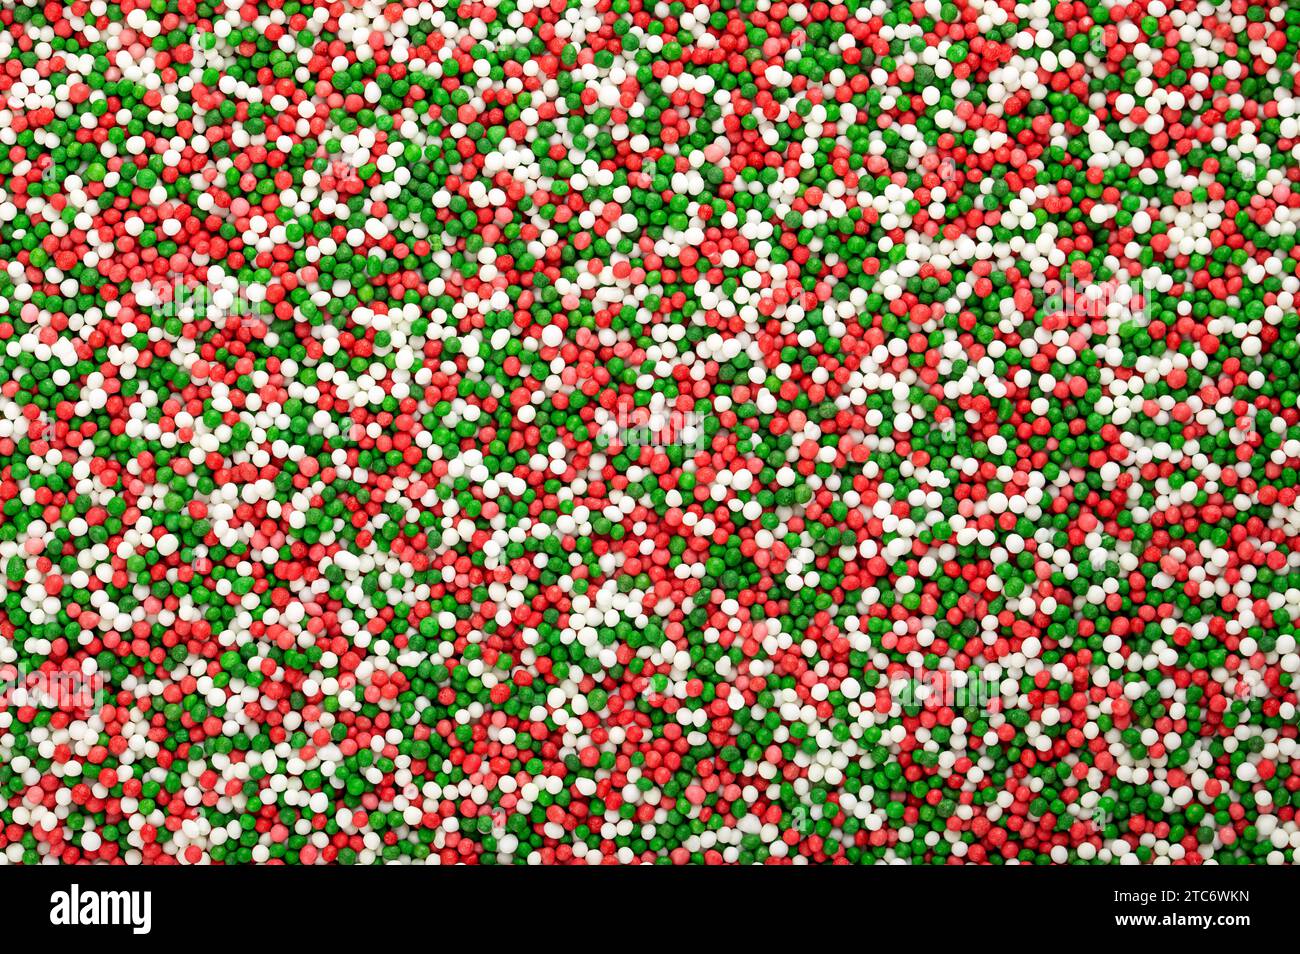 Saupoudrages colorés faits de minuscules boules de sucre. Mélange vert, rouge et blanc de nonpareils. Des centaines et des milliers décoratifs faits de sucre et d'amidon. Banque D'Images